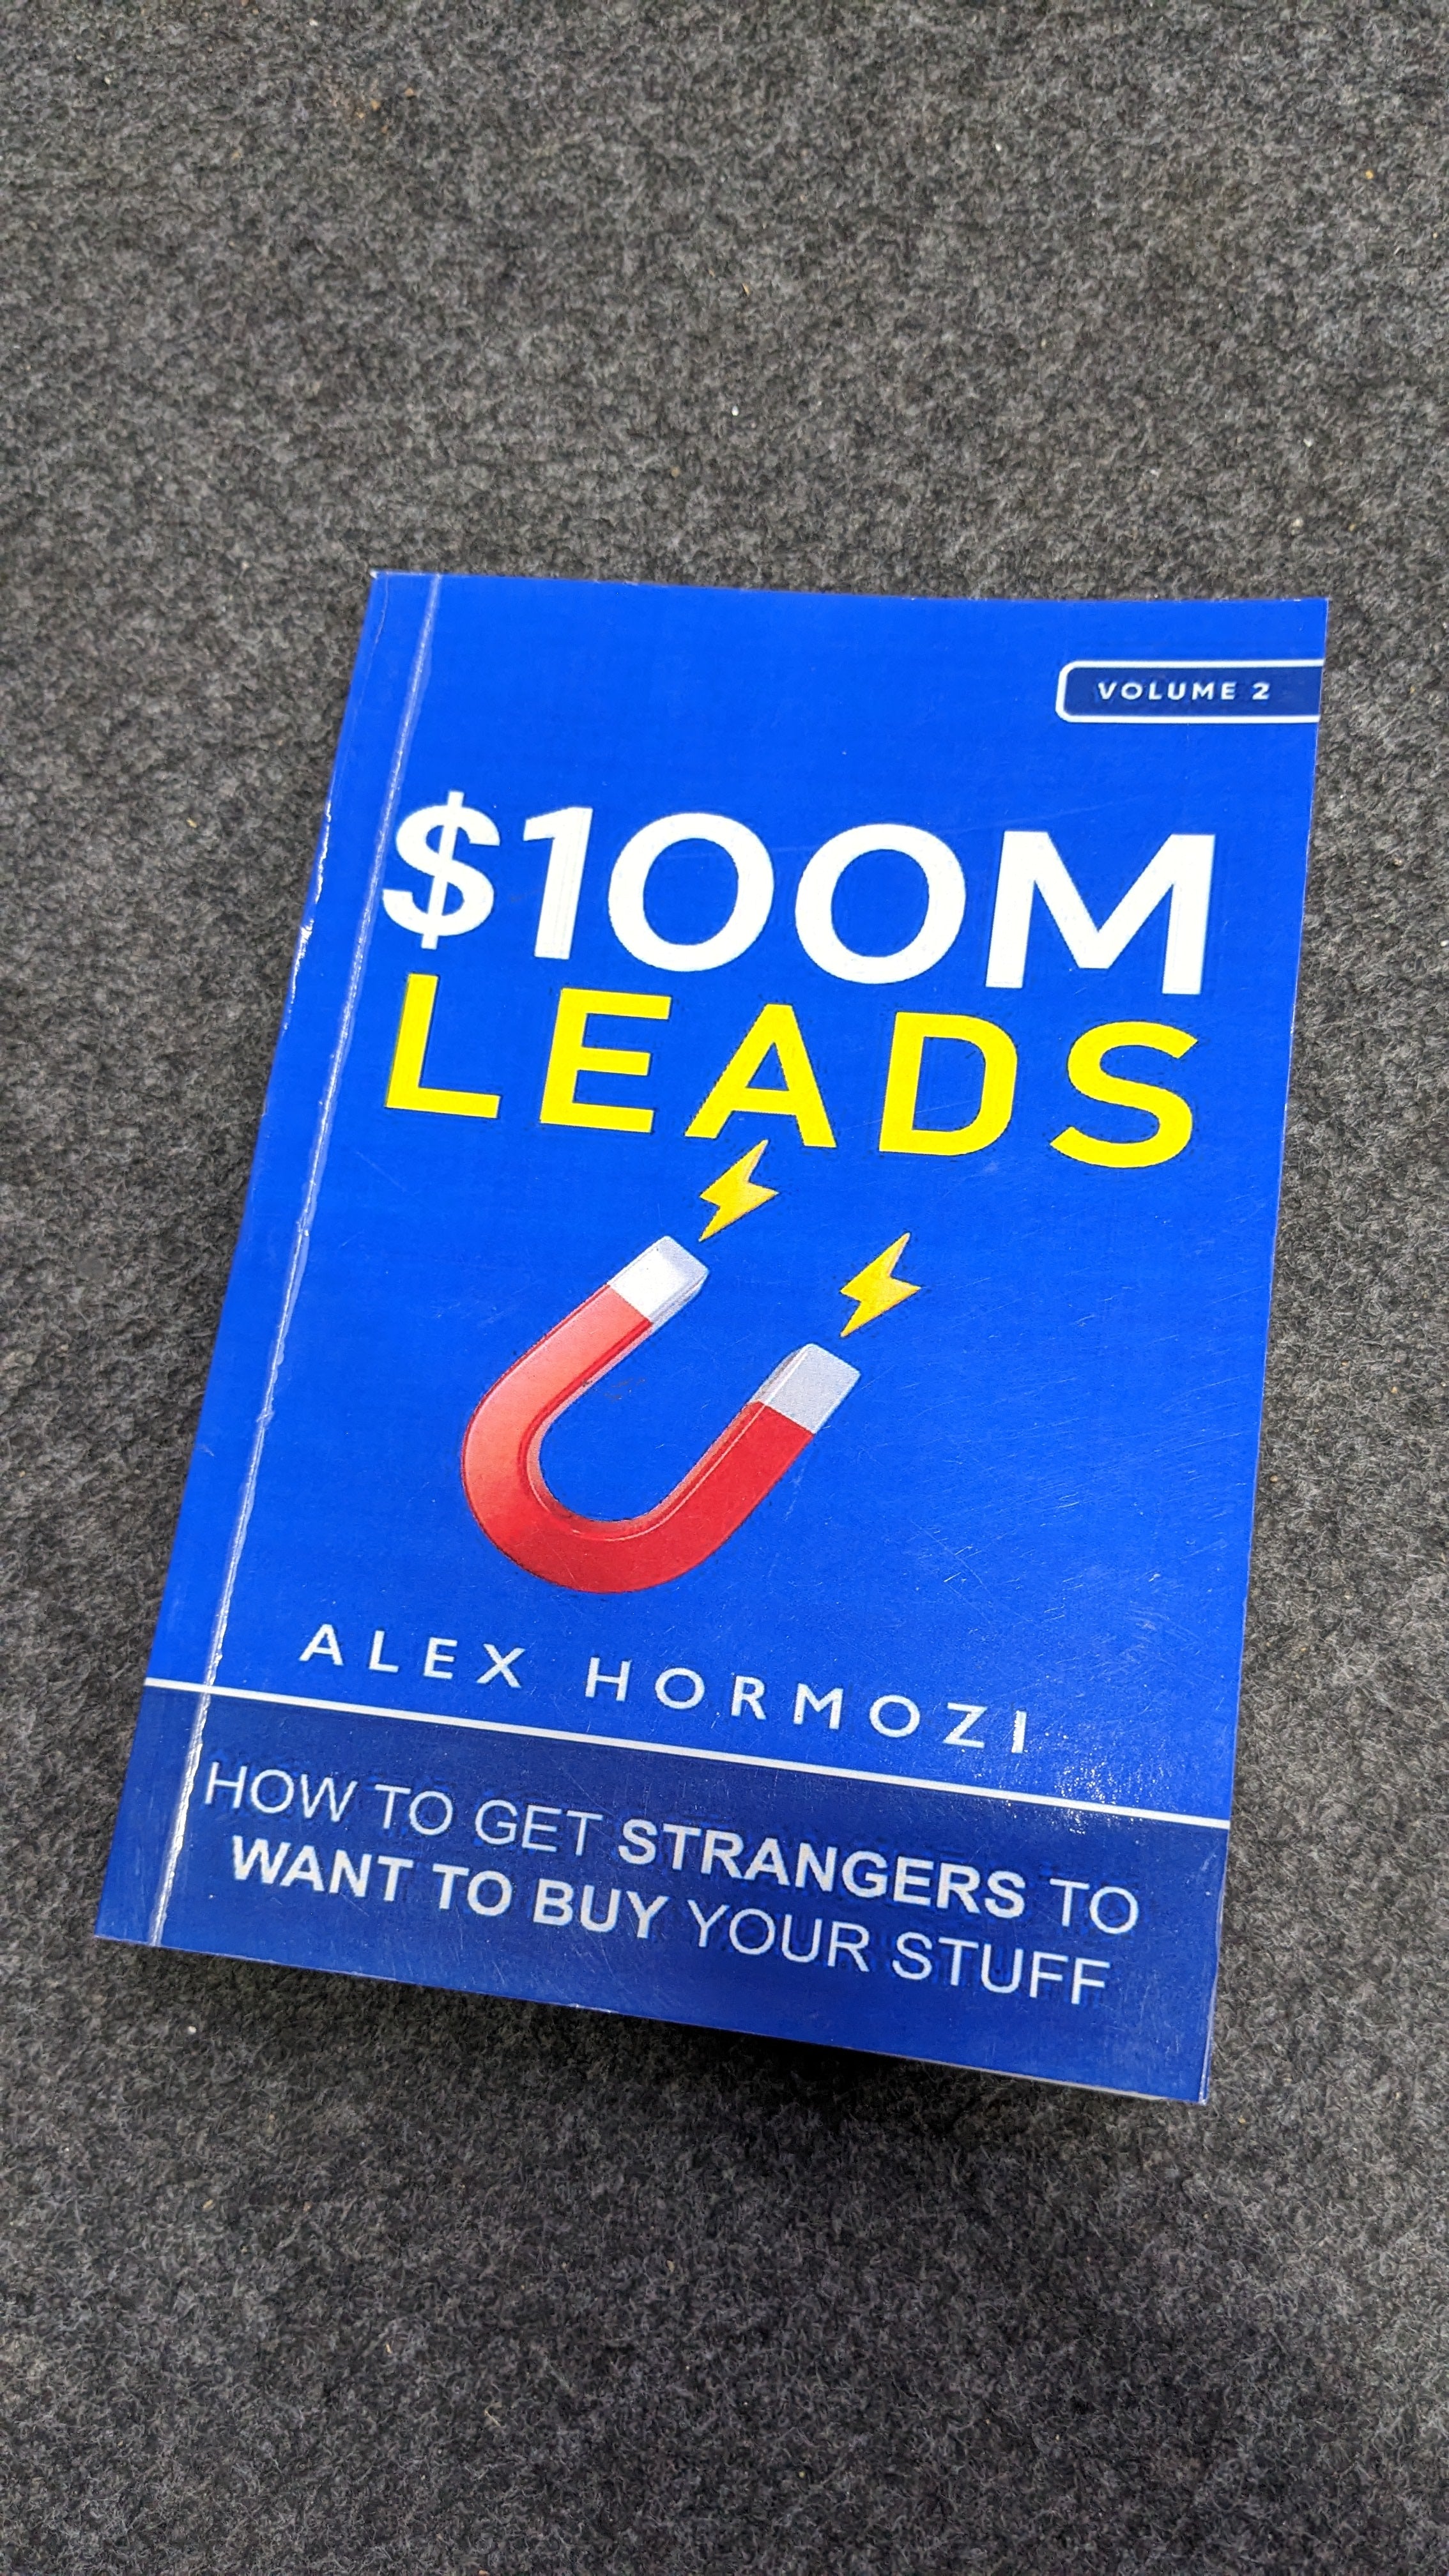 $100M Leads by Alex Hormozi - Bookshelf.pk Pakistan